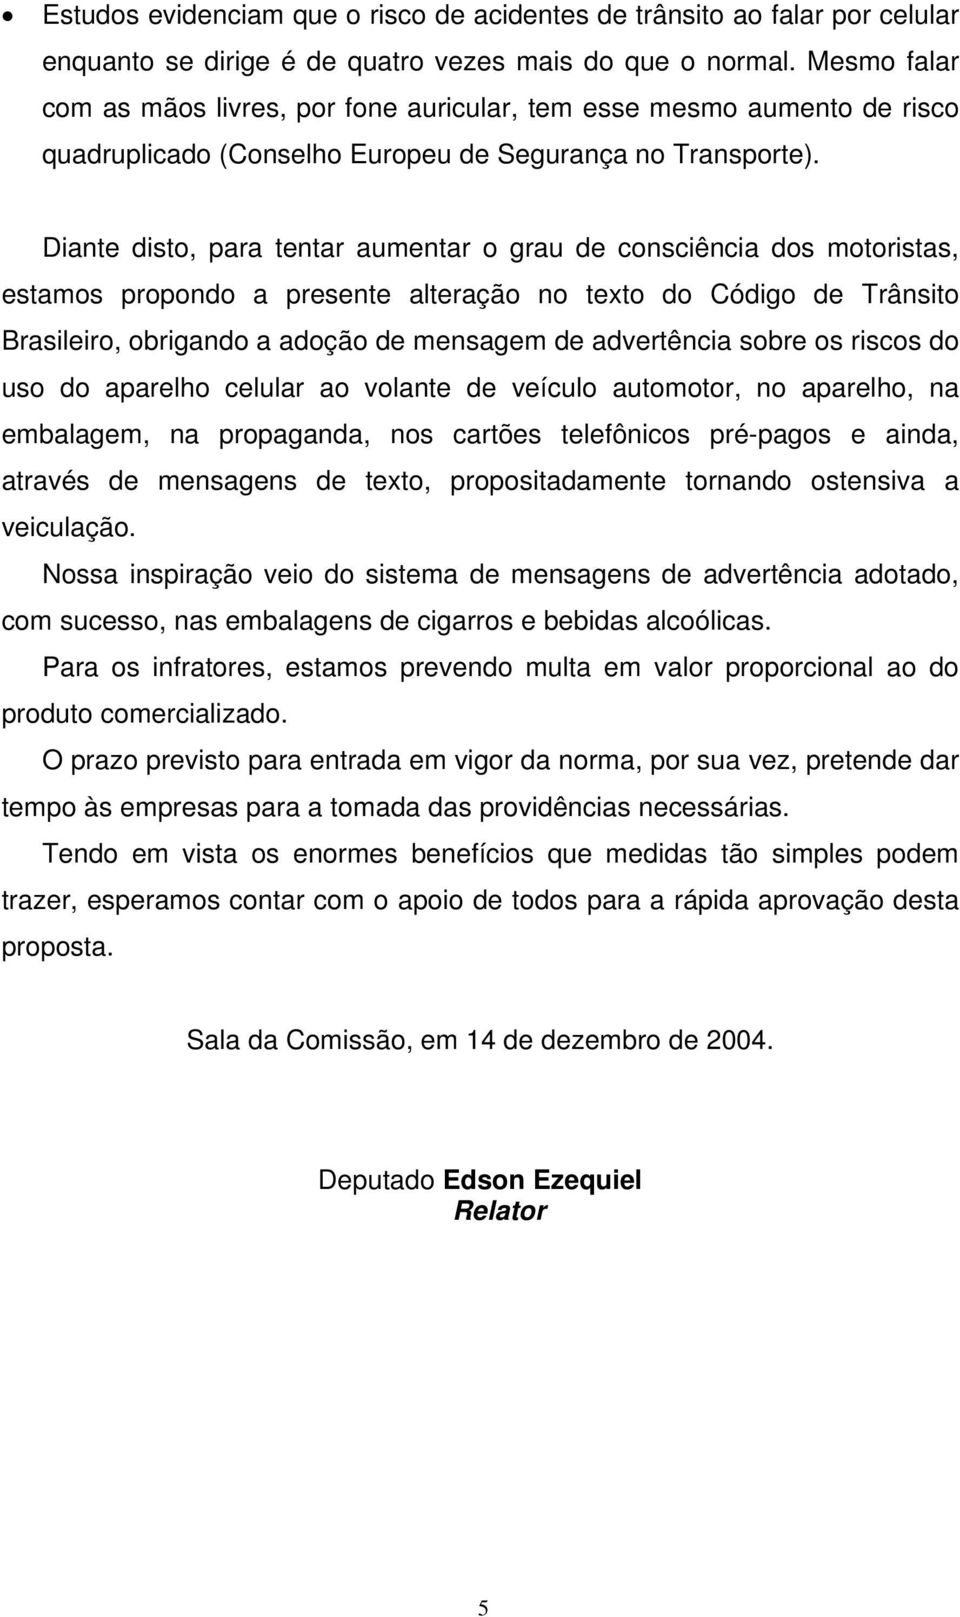 Diante disto, para tentar aumentar o grau de consciência dos motoristas, estamos propondo a presente alteração no texto do Código de Trânsito Brasileiro, obrigando a adoção de mensagem de advertência